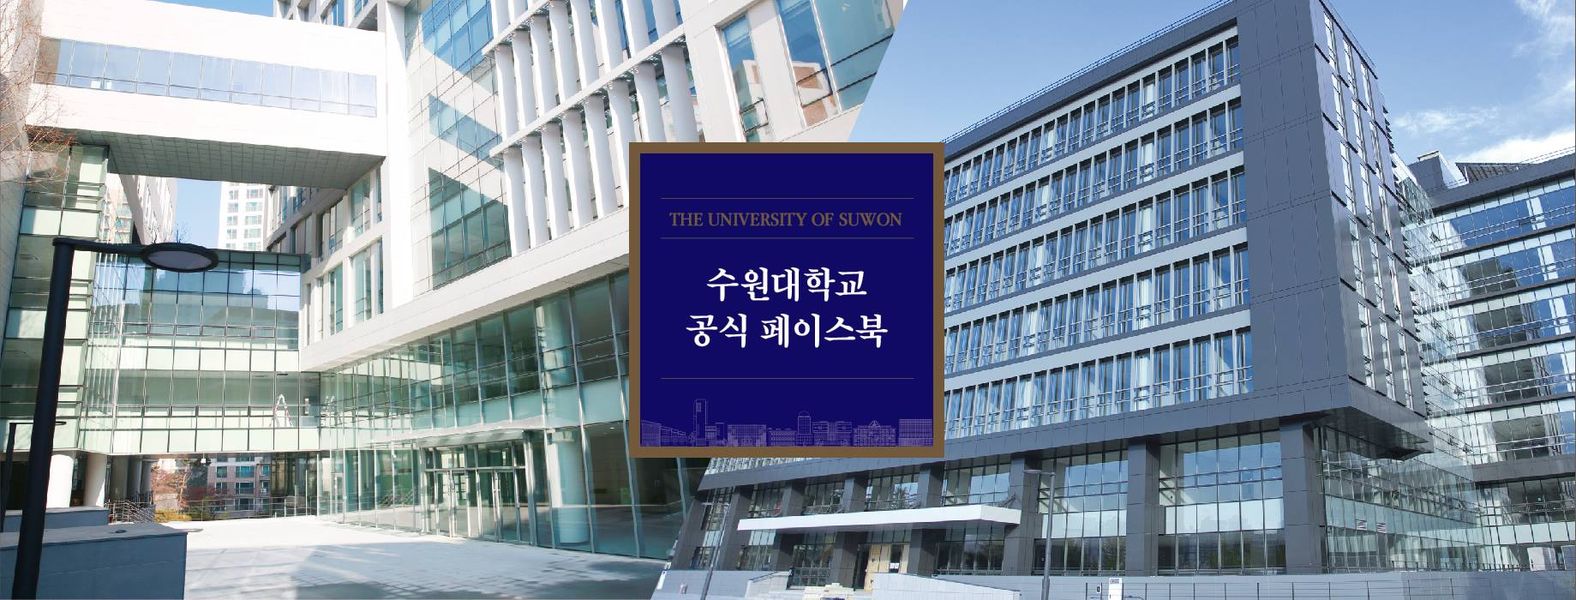 Giới thiệu trường đại học Suwon ở Hàn Quốc